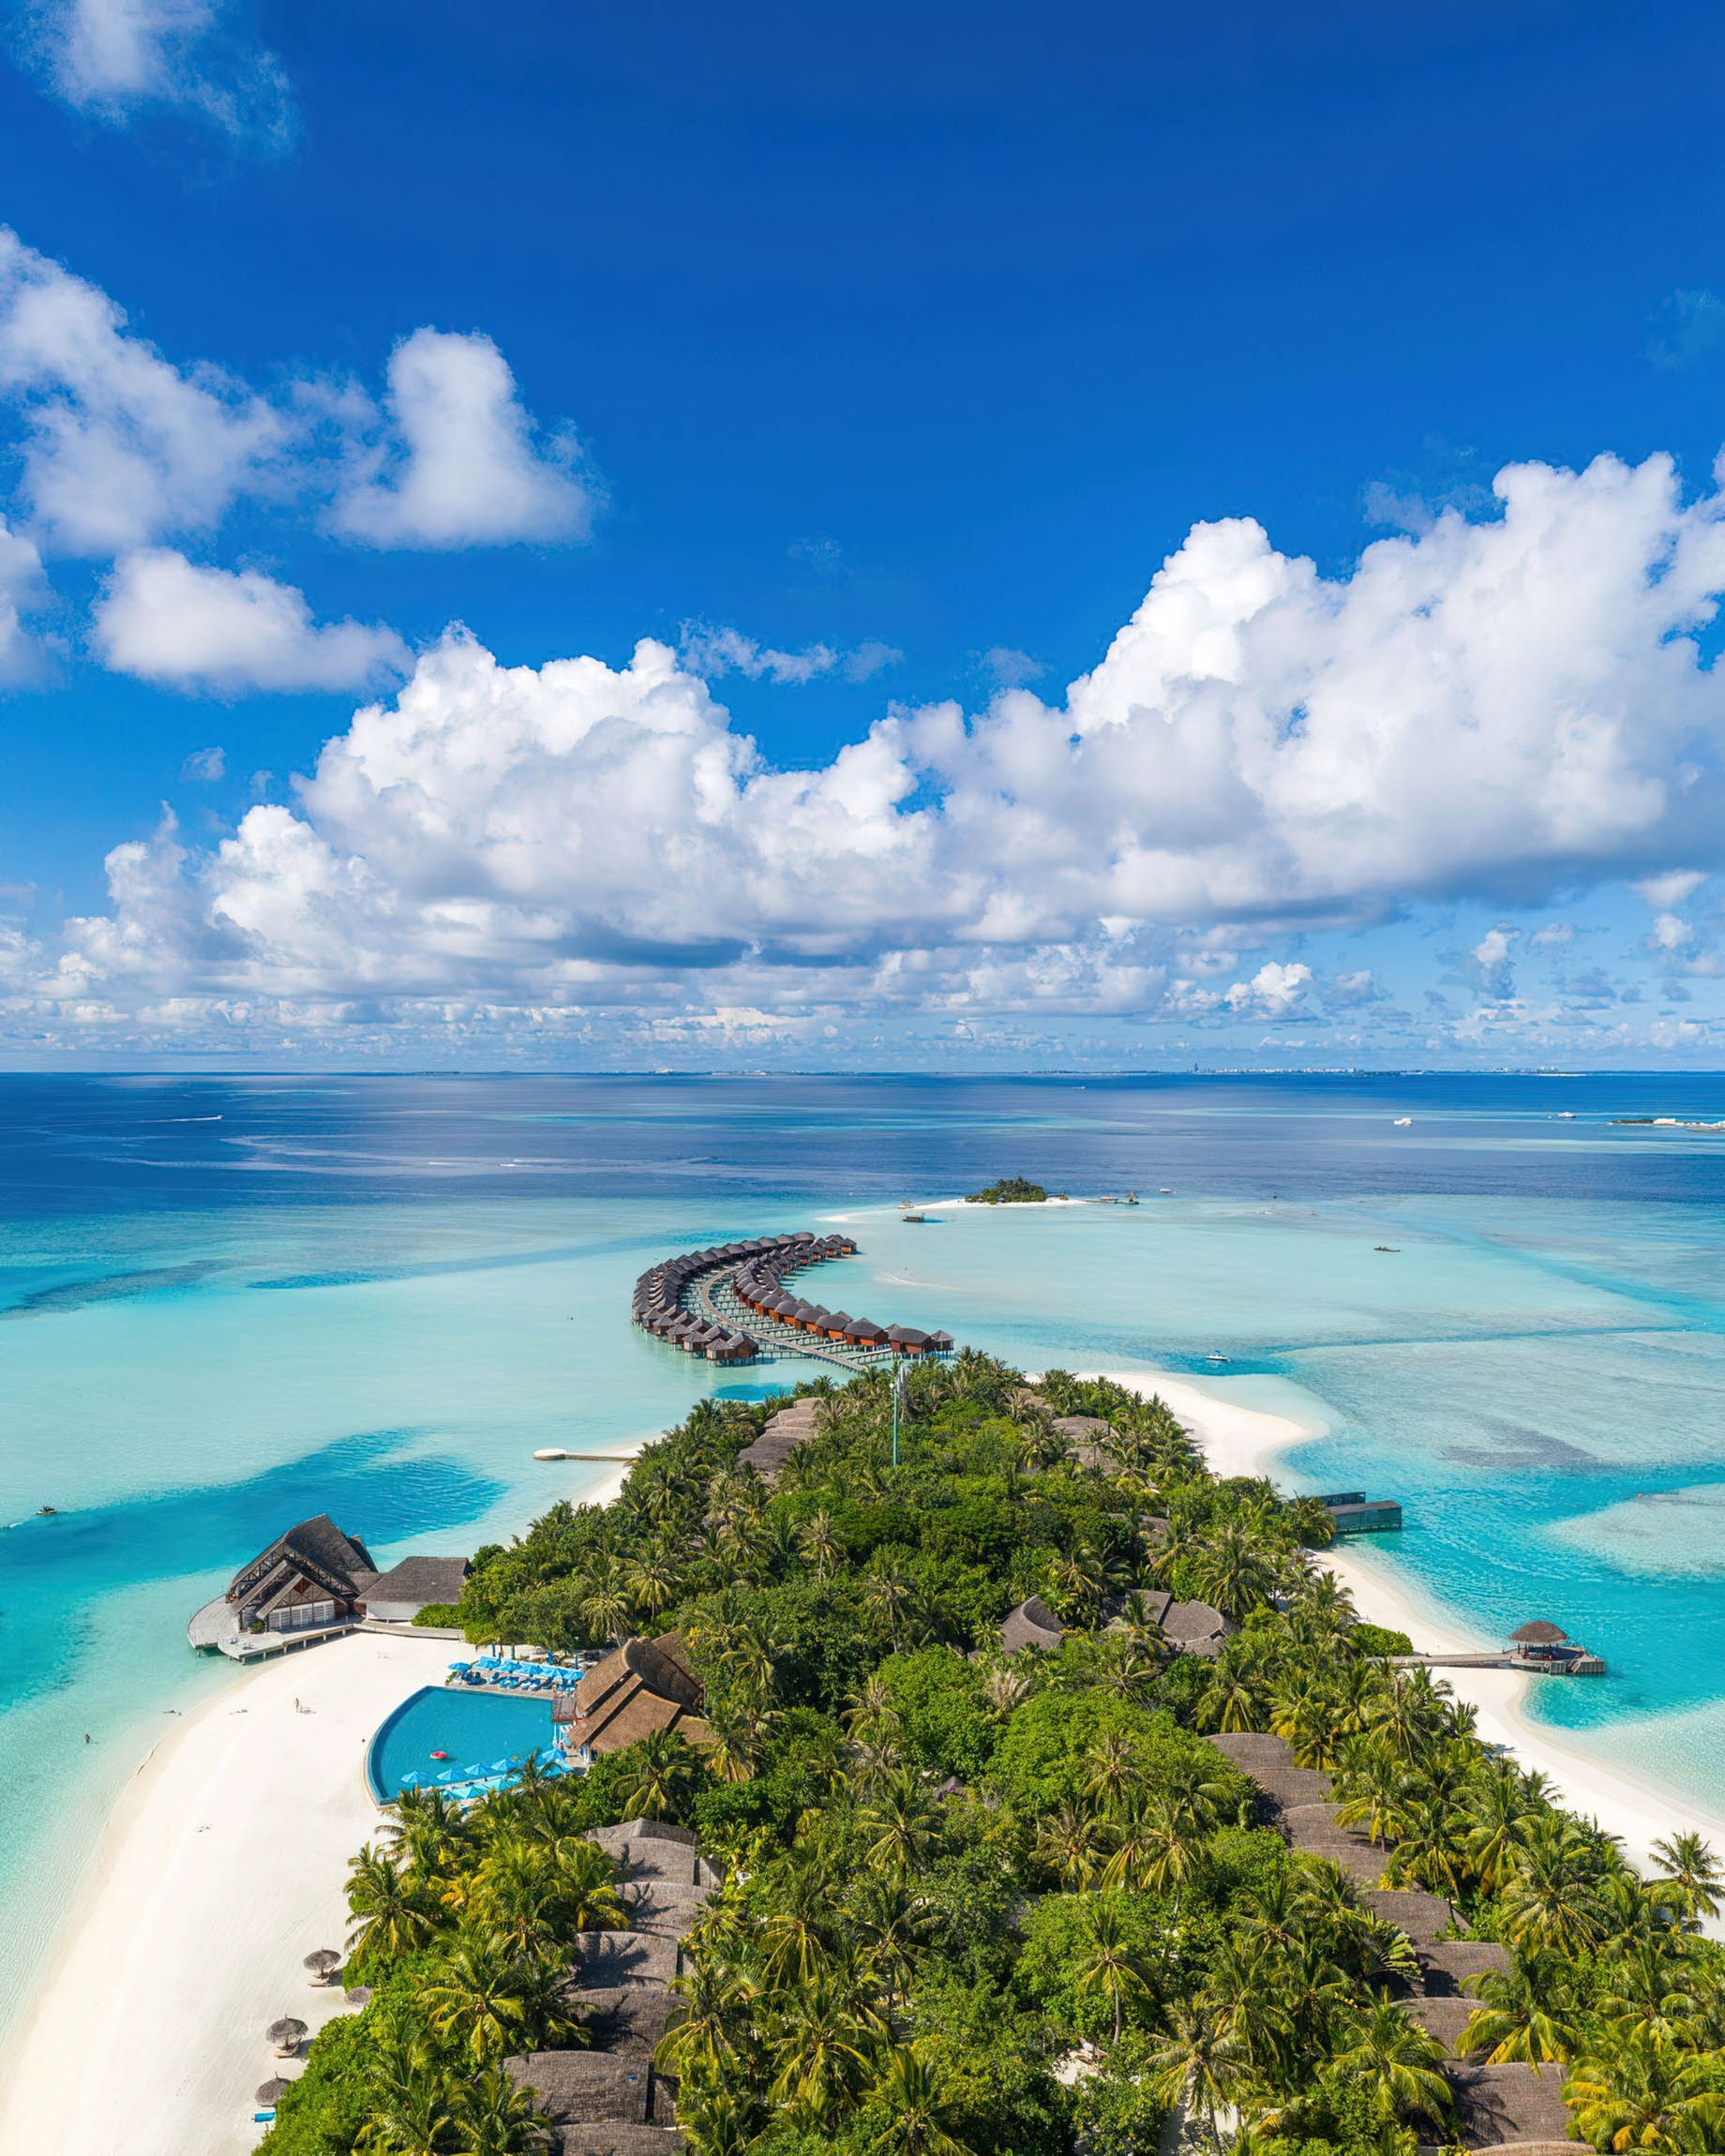 Anantara Thigu Maldives Resort – South Male Atoll, Maldives – Aerial View